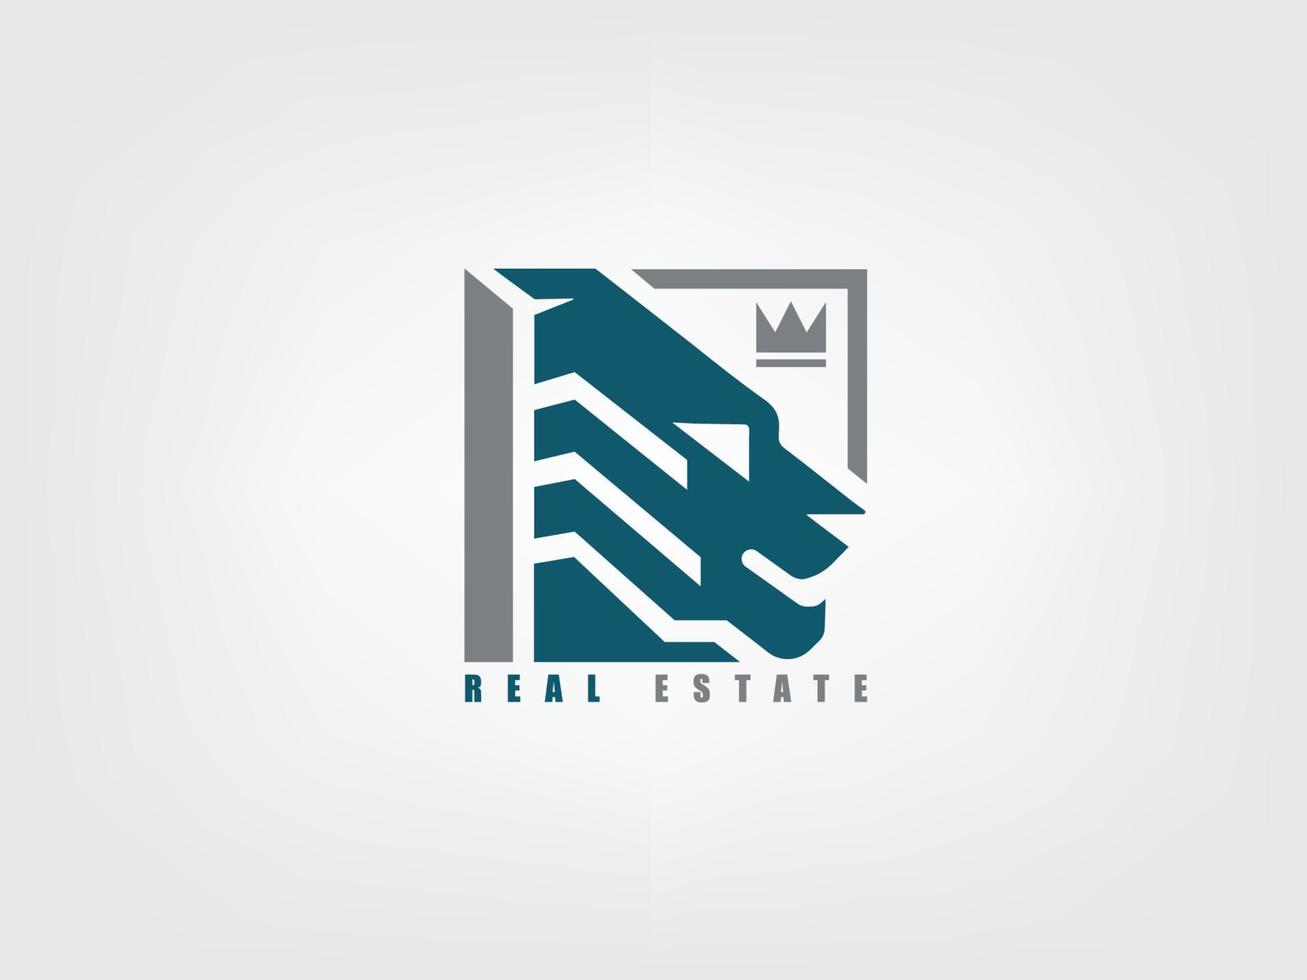 Real estate logo design, lion king vector